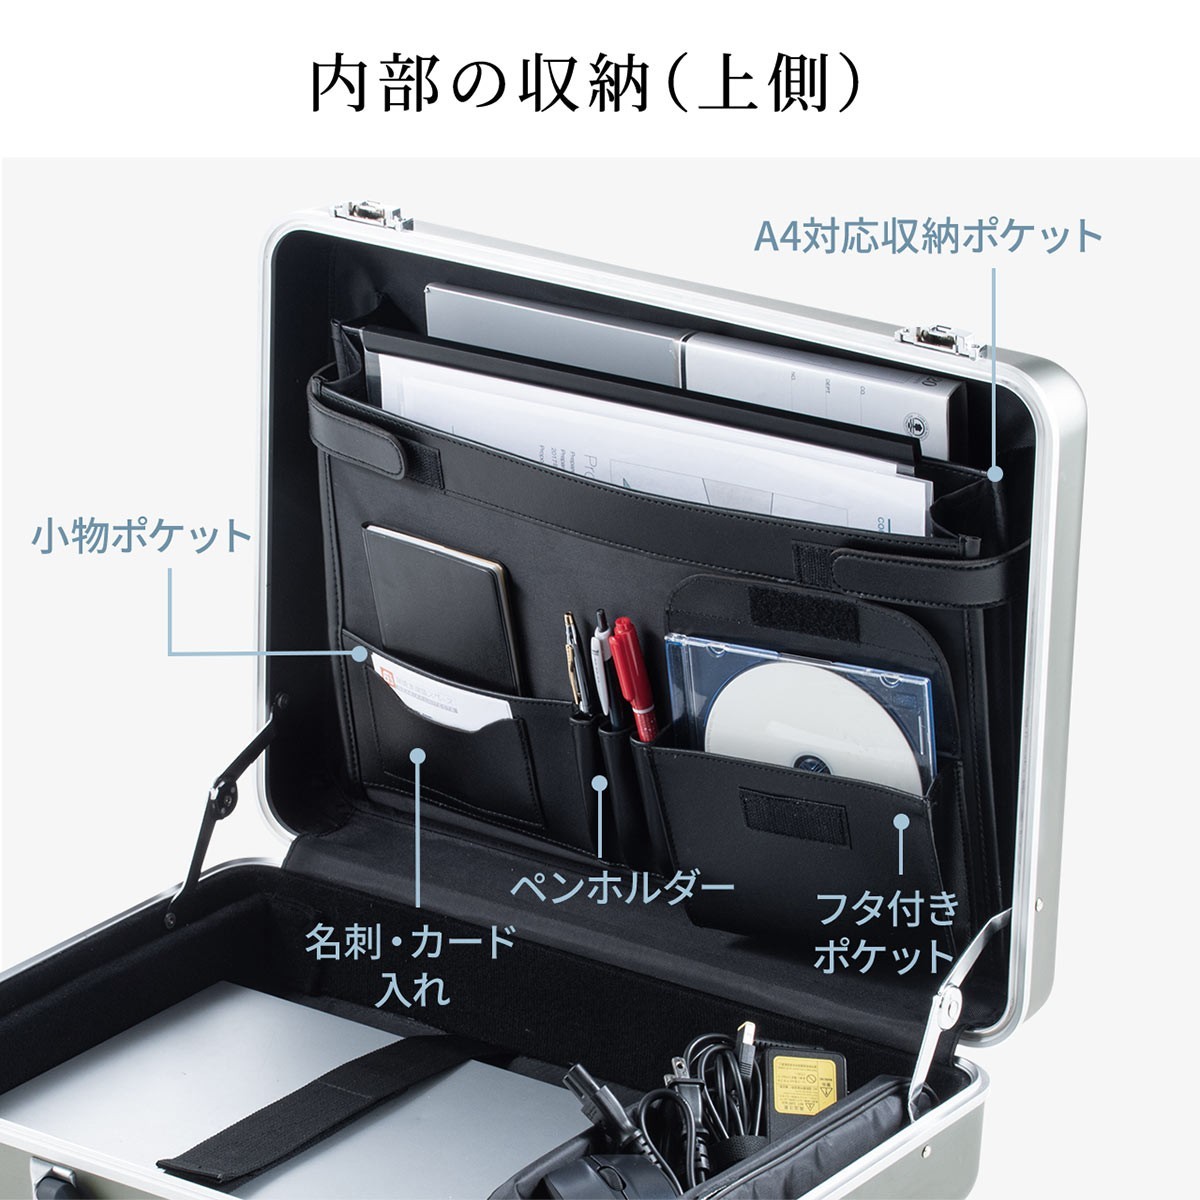 アタッシュケース アルミケース A4 ビジネス バッグ メンズ パソコン収納 自立 スタイリッシュ 40代 50代 ハードケース アタッシェケース  200-BAG155